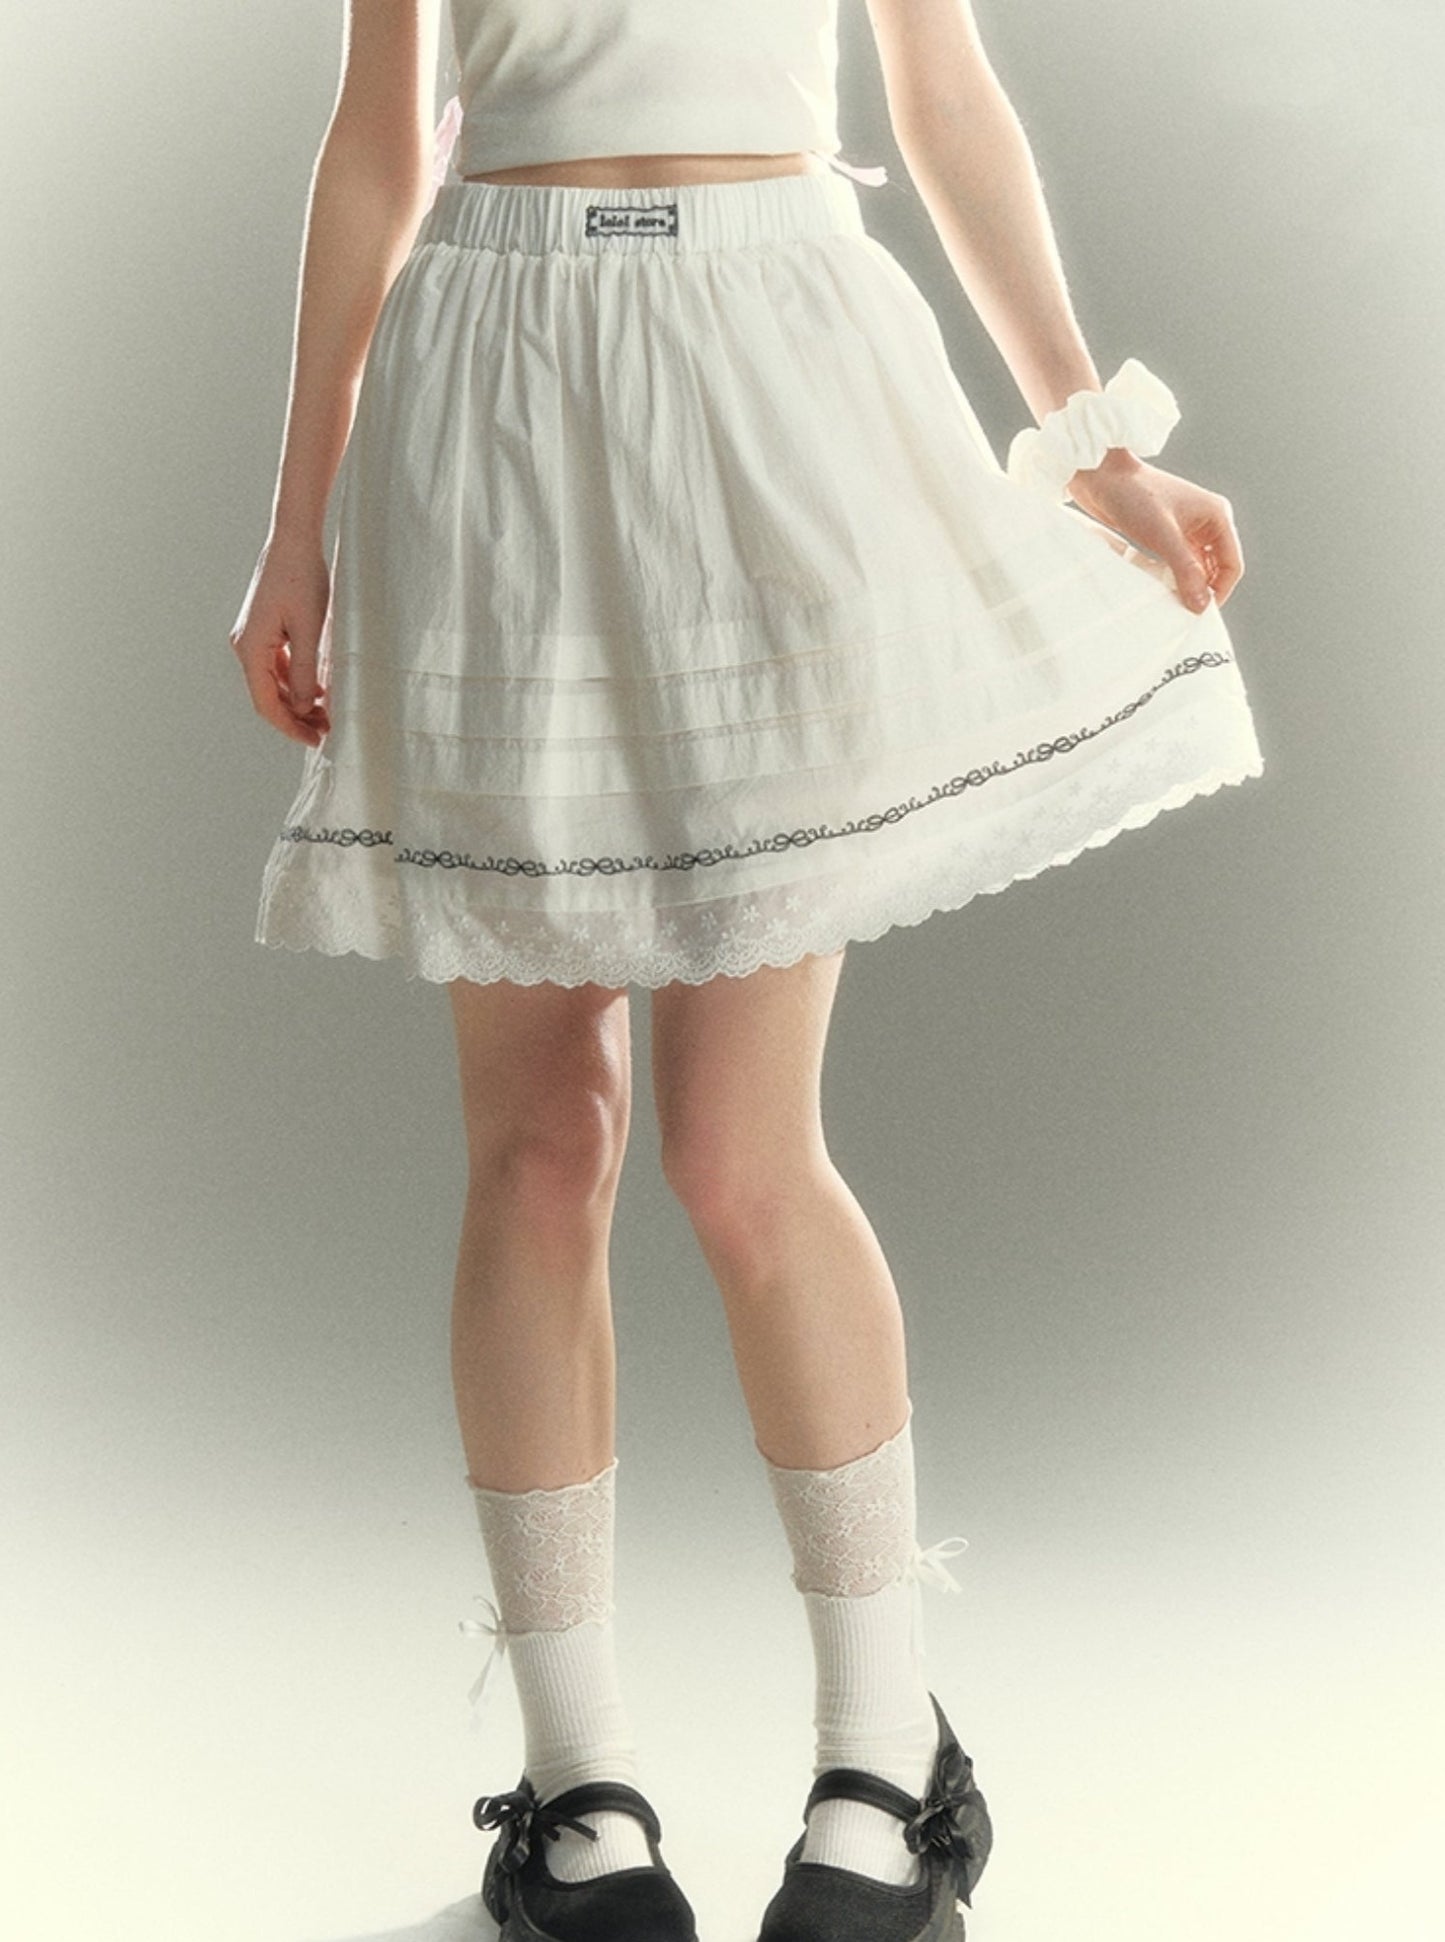 High Lace A-Line Skirt Short Skirt Set-Up